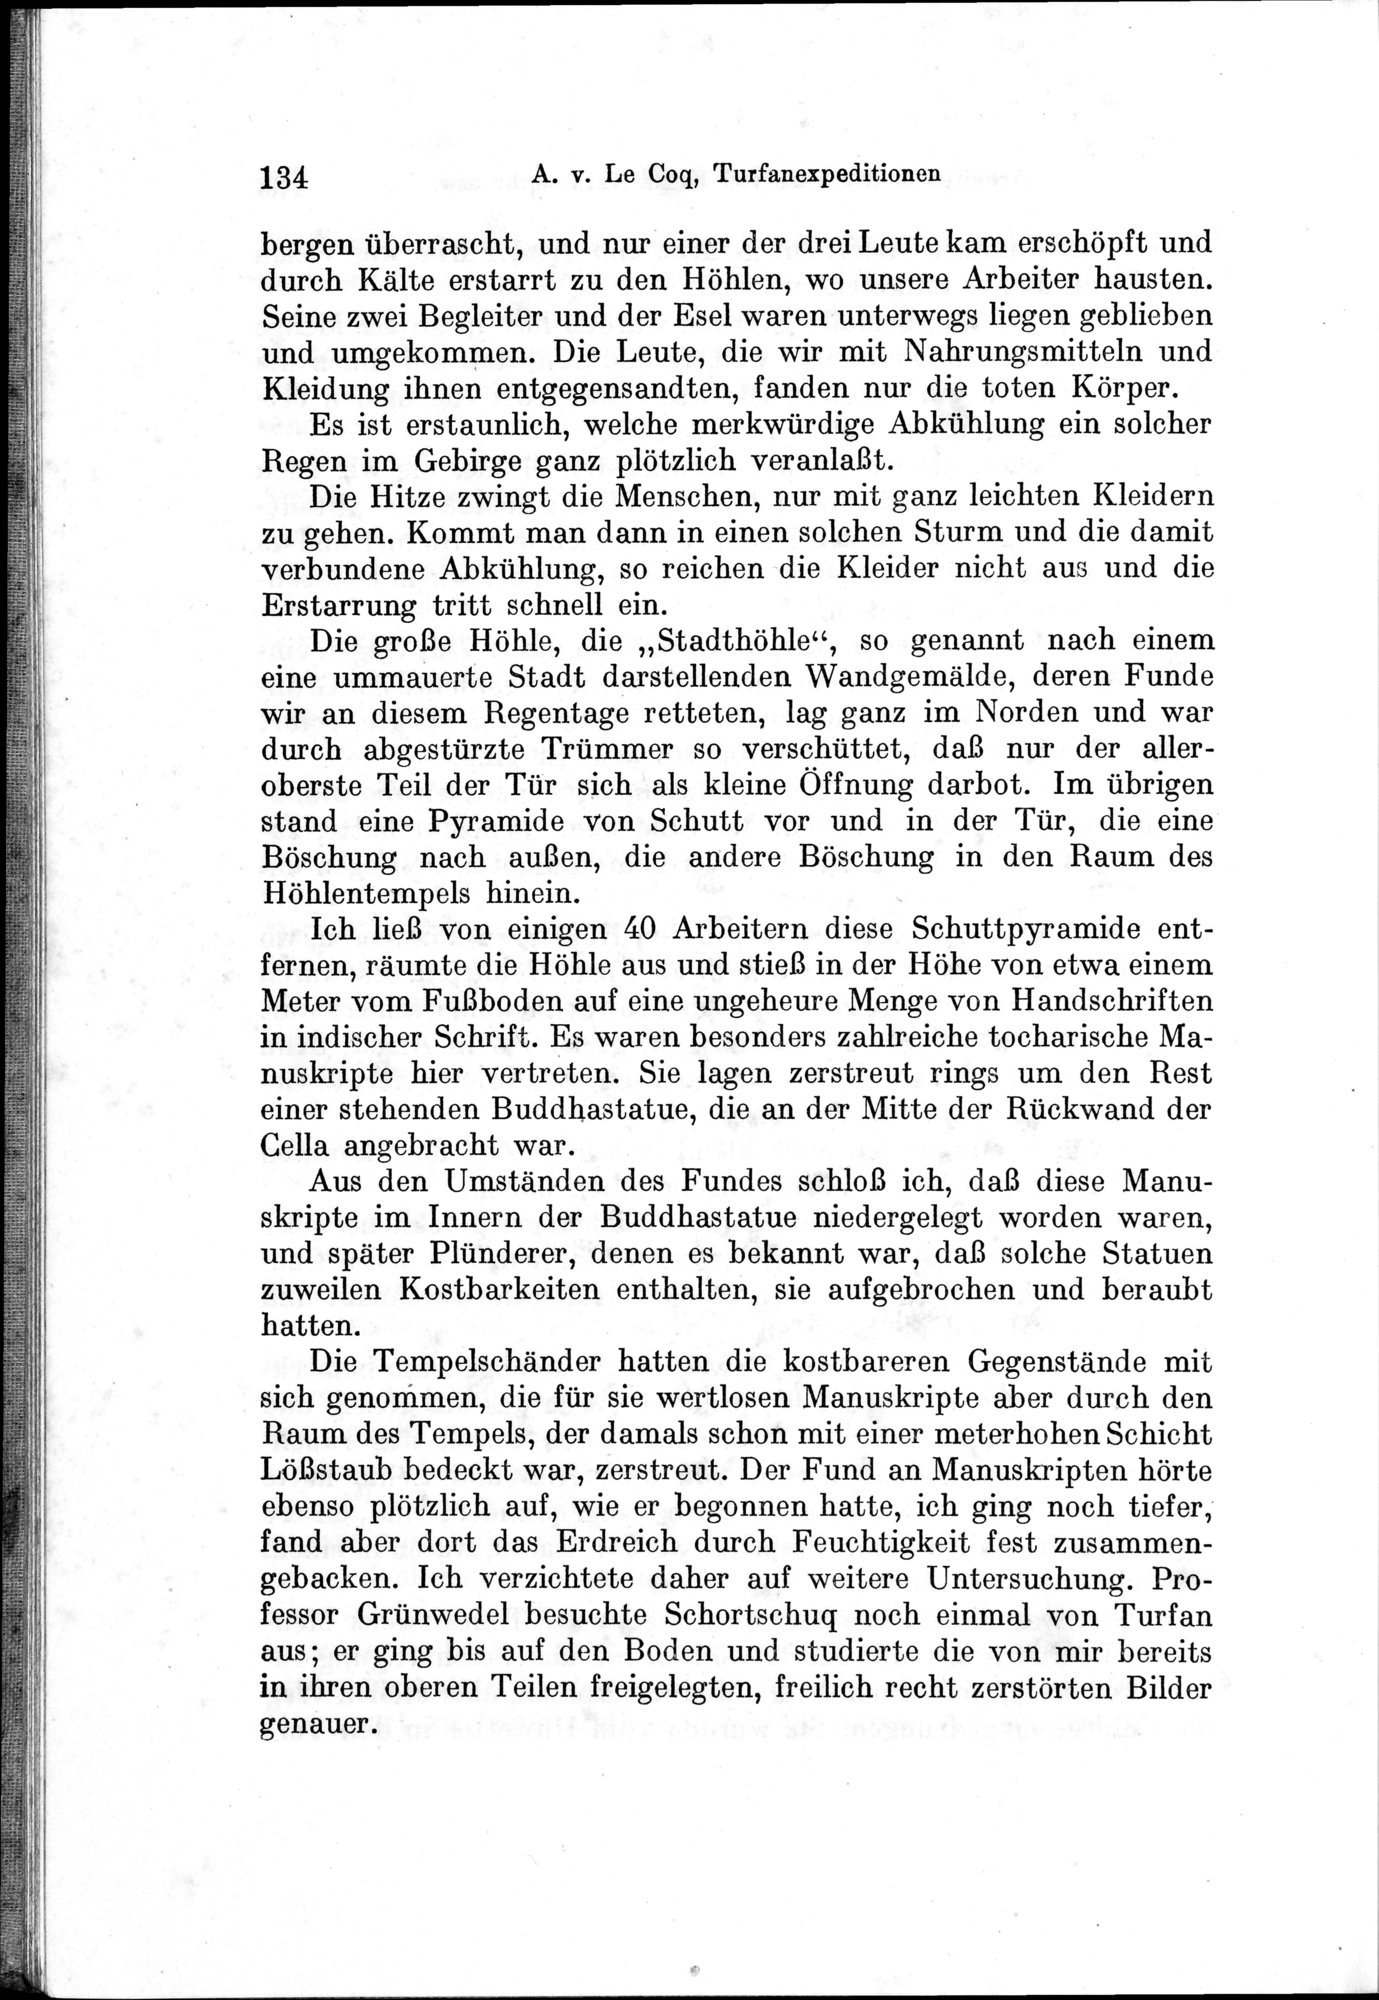 Auf Hellas Spuren in Ostturkistan : vol.1 / Page 192 (Grayscale High Resolution Image)